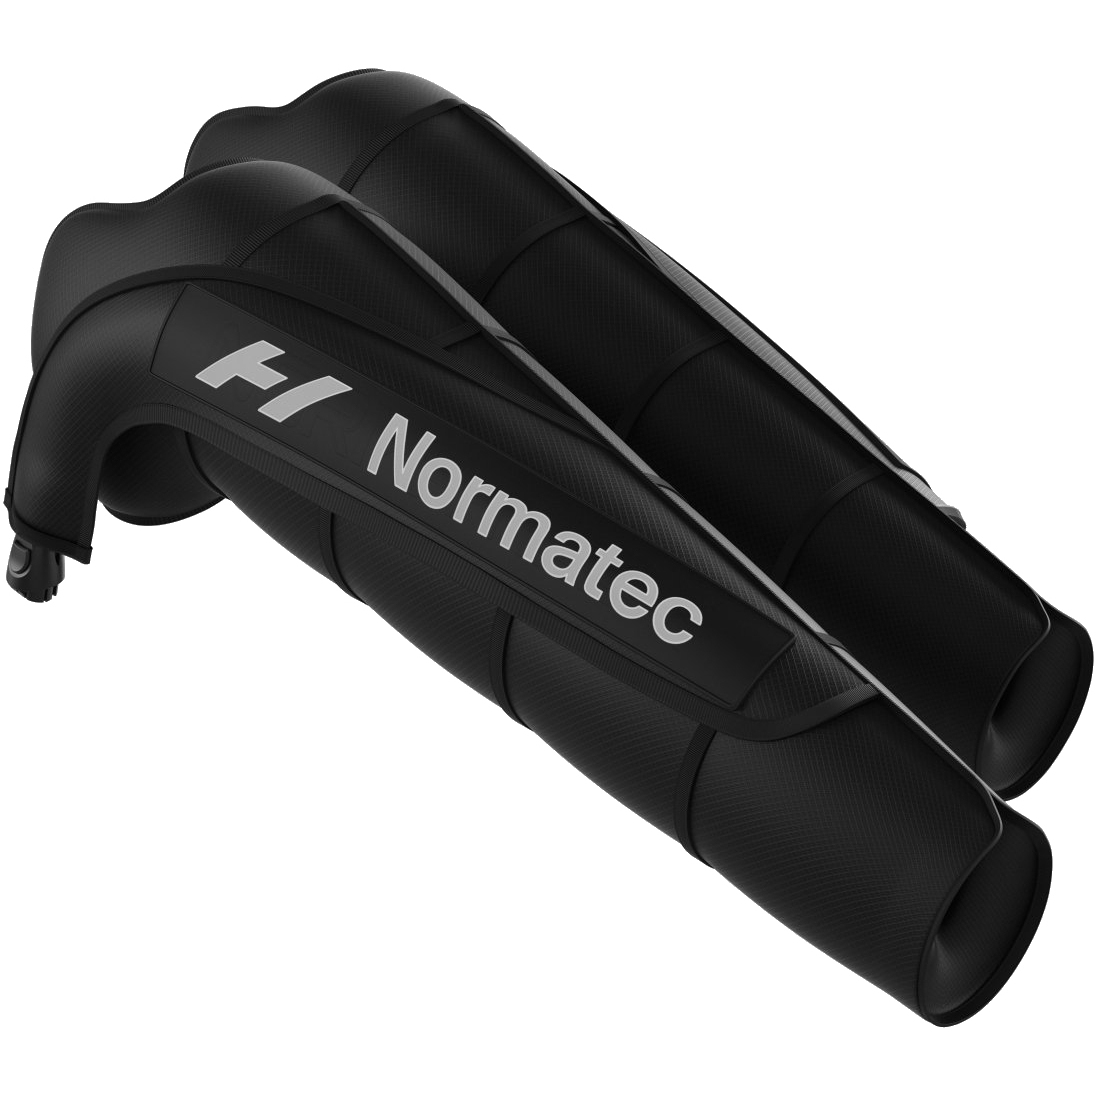 Productfoto van Hyperice Normatec 3 Arm Attachments - Armbevestigingsset - Paar - zwart